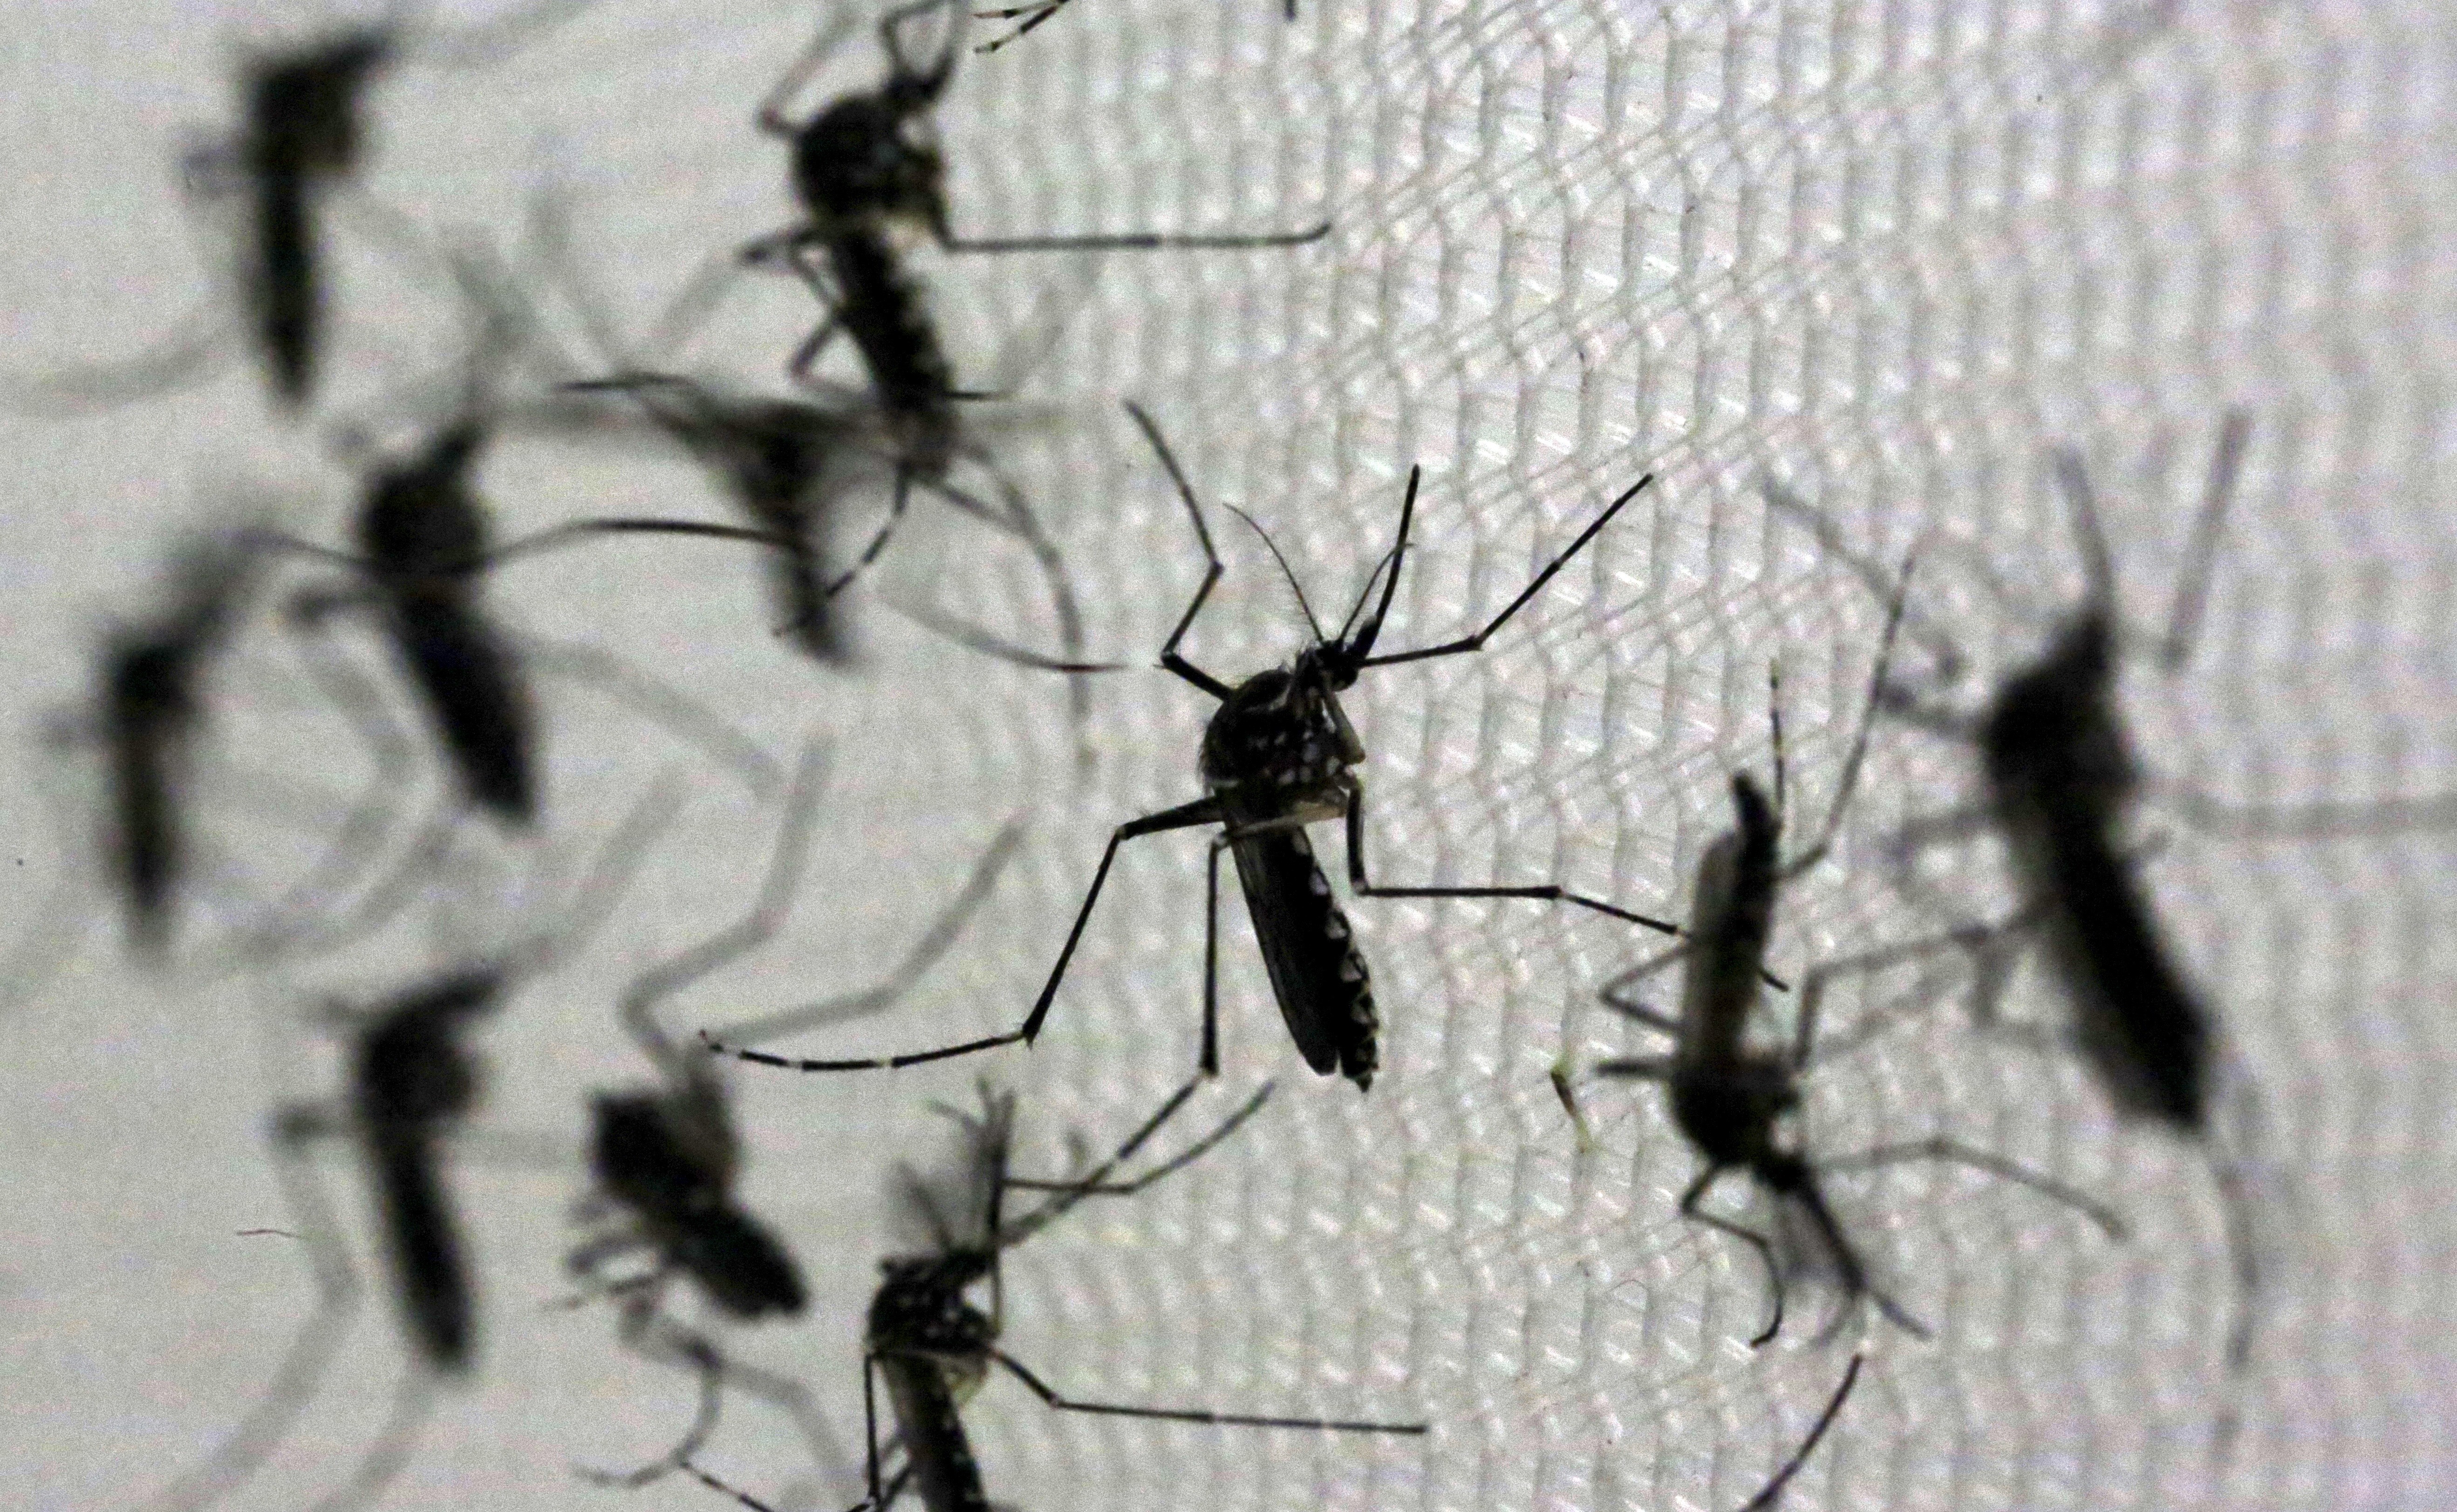 Morte por dengue em São José dos Campos é retirada de painel de monitoramento do Estado